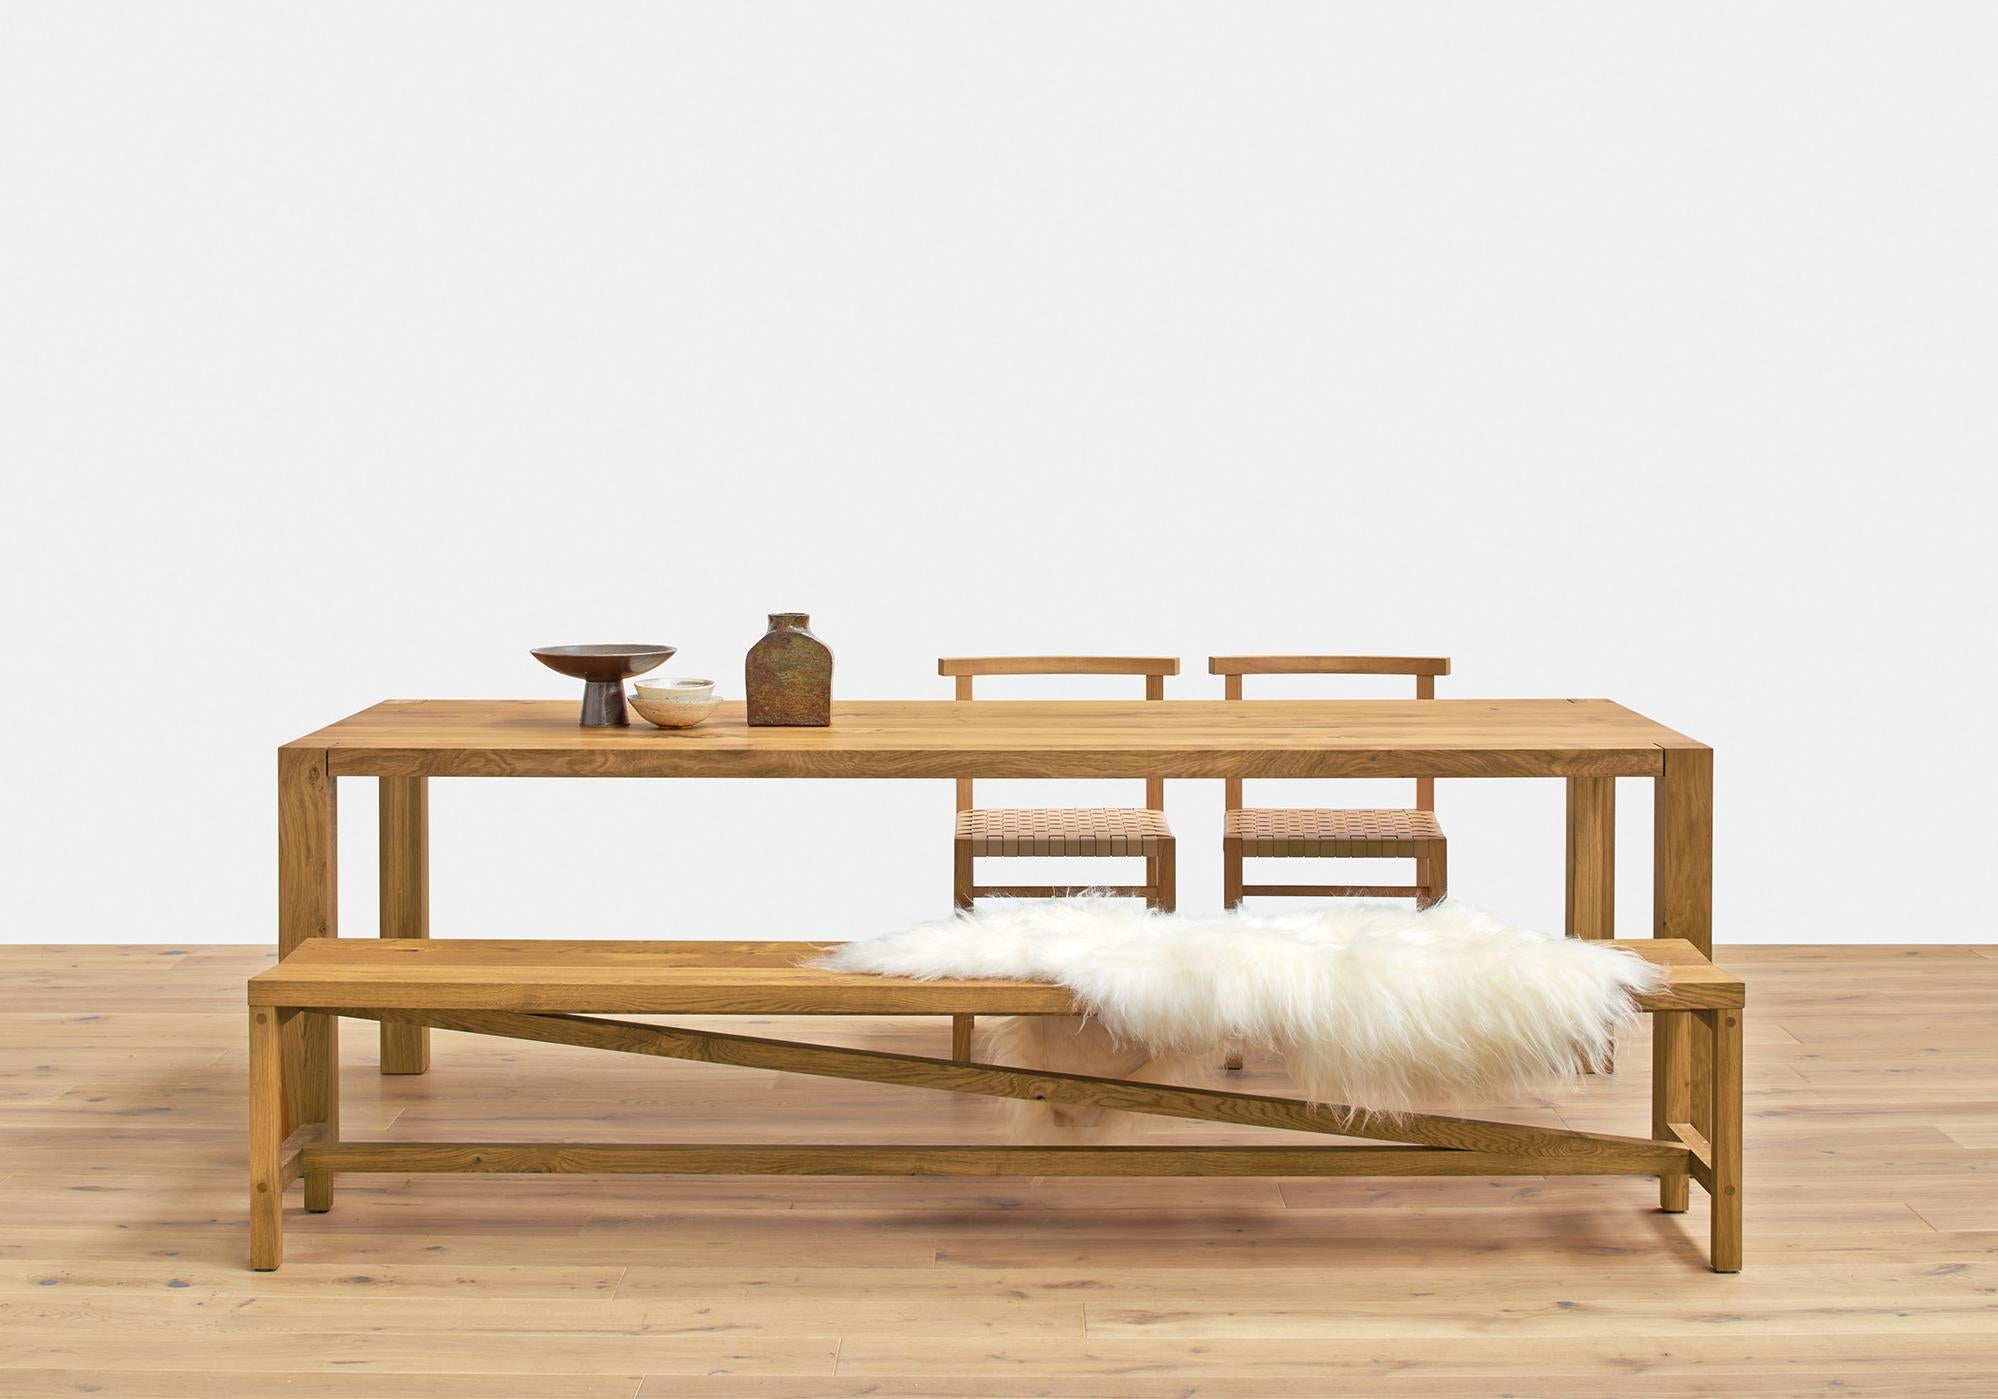 Bench Sitz spiegelt die Designsprache von table Platz wider und ist eine natürliche Ergänzung. Die charakteristische diagonale Stange dominiert den Charakter der Massivholzbank und unterstreicht die legere und stabile Konstruktion. Der Rahmen ist